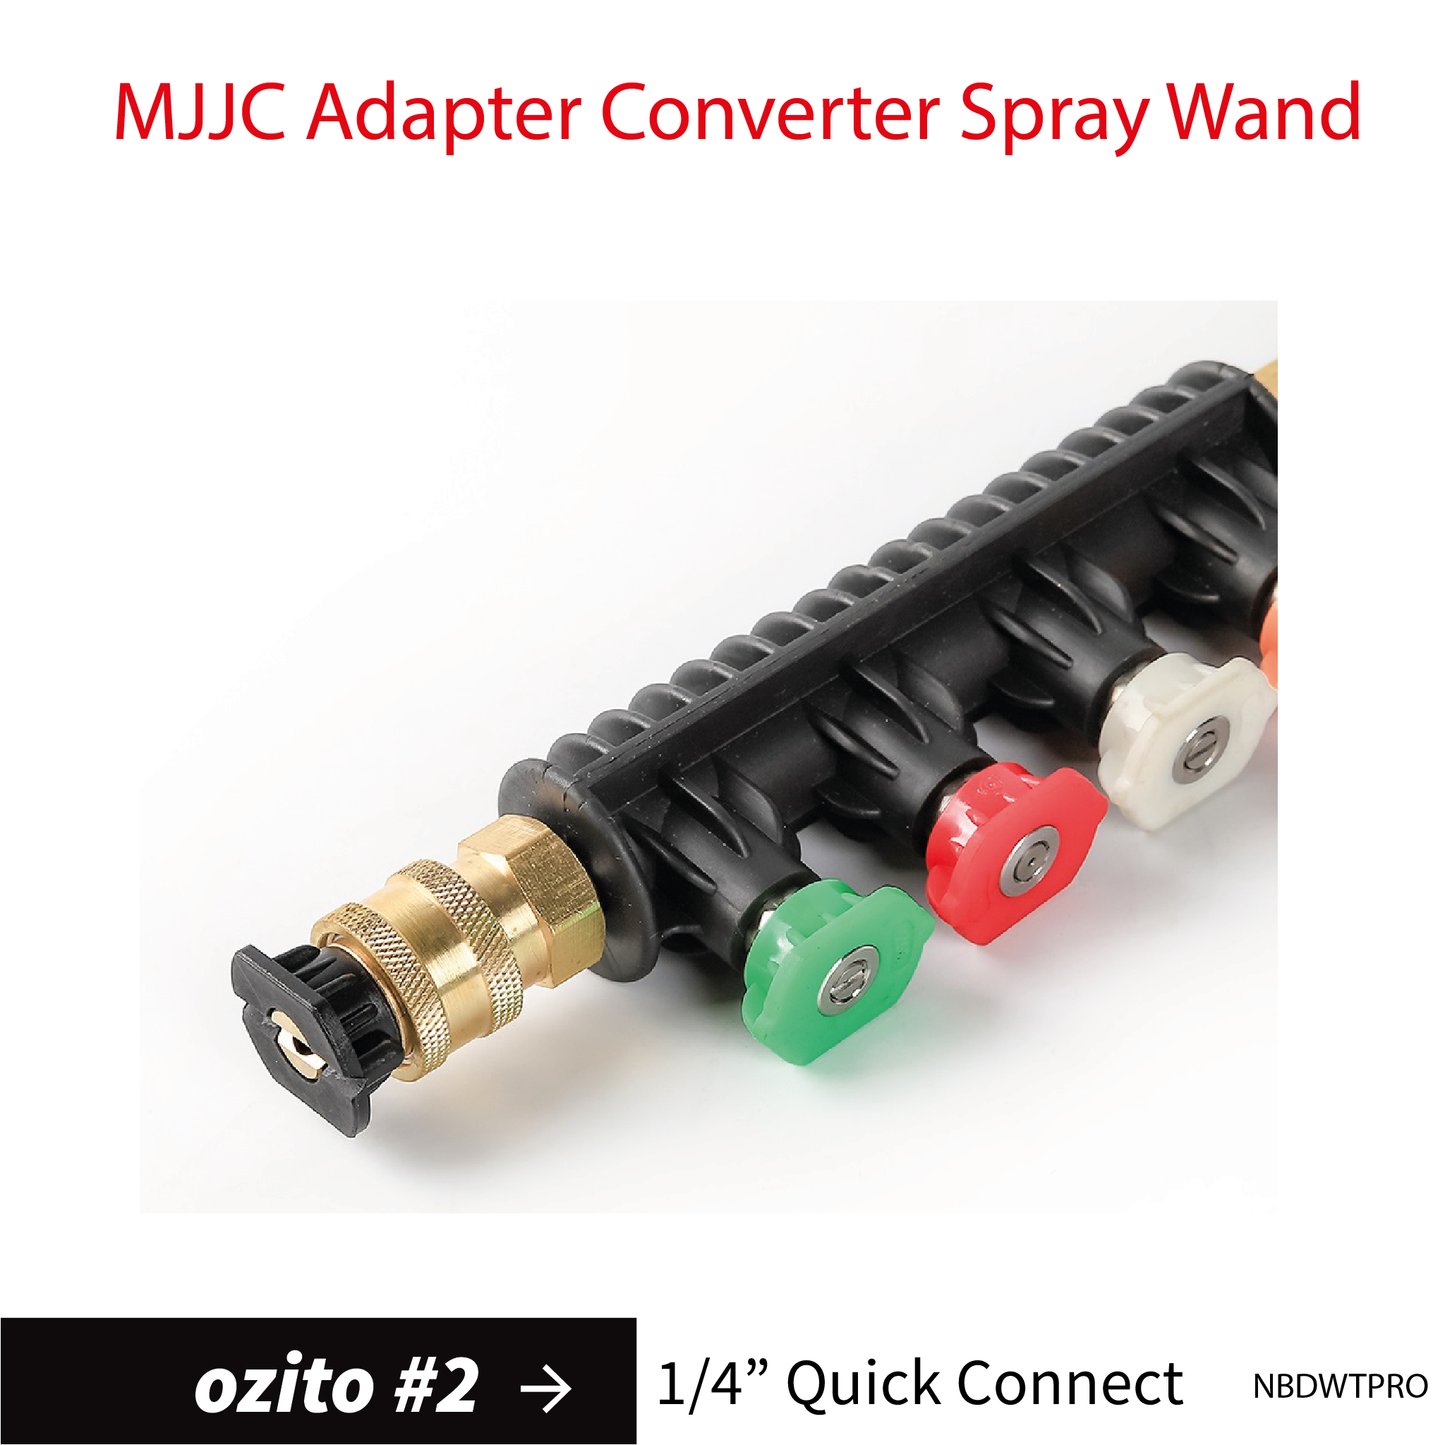 Ozito#2 MJJC Pressure Washer Adapter Conversion Converter Spray